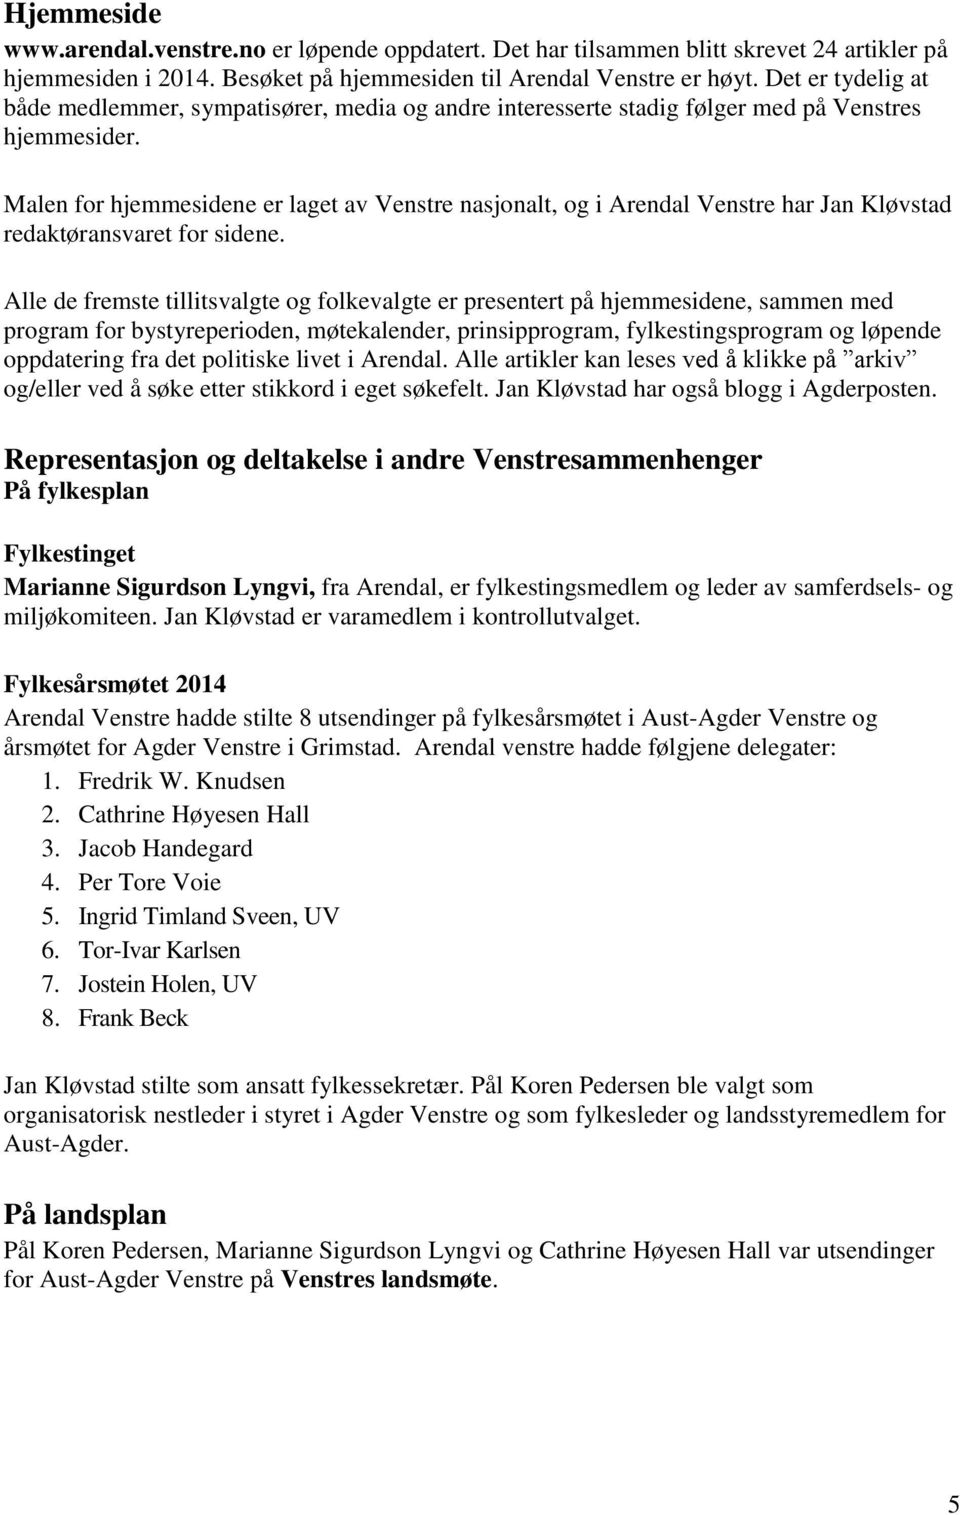 Malen for hjemmesidene er laget av Venstre nasjonalt, og i Arendal Venstre har Jan Kløvstad redaktøransvaret for sidene.